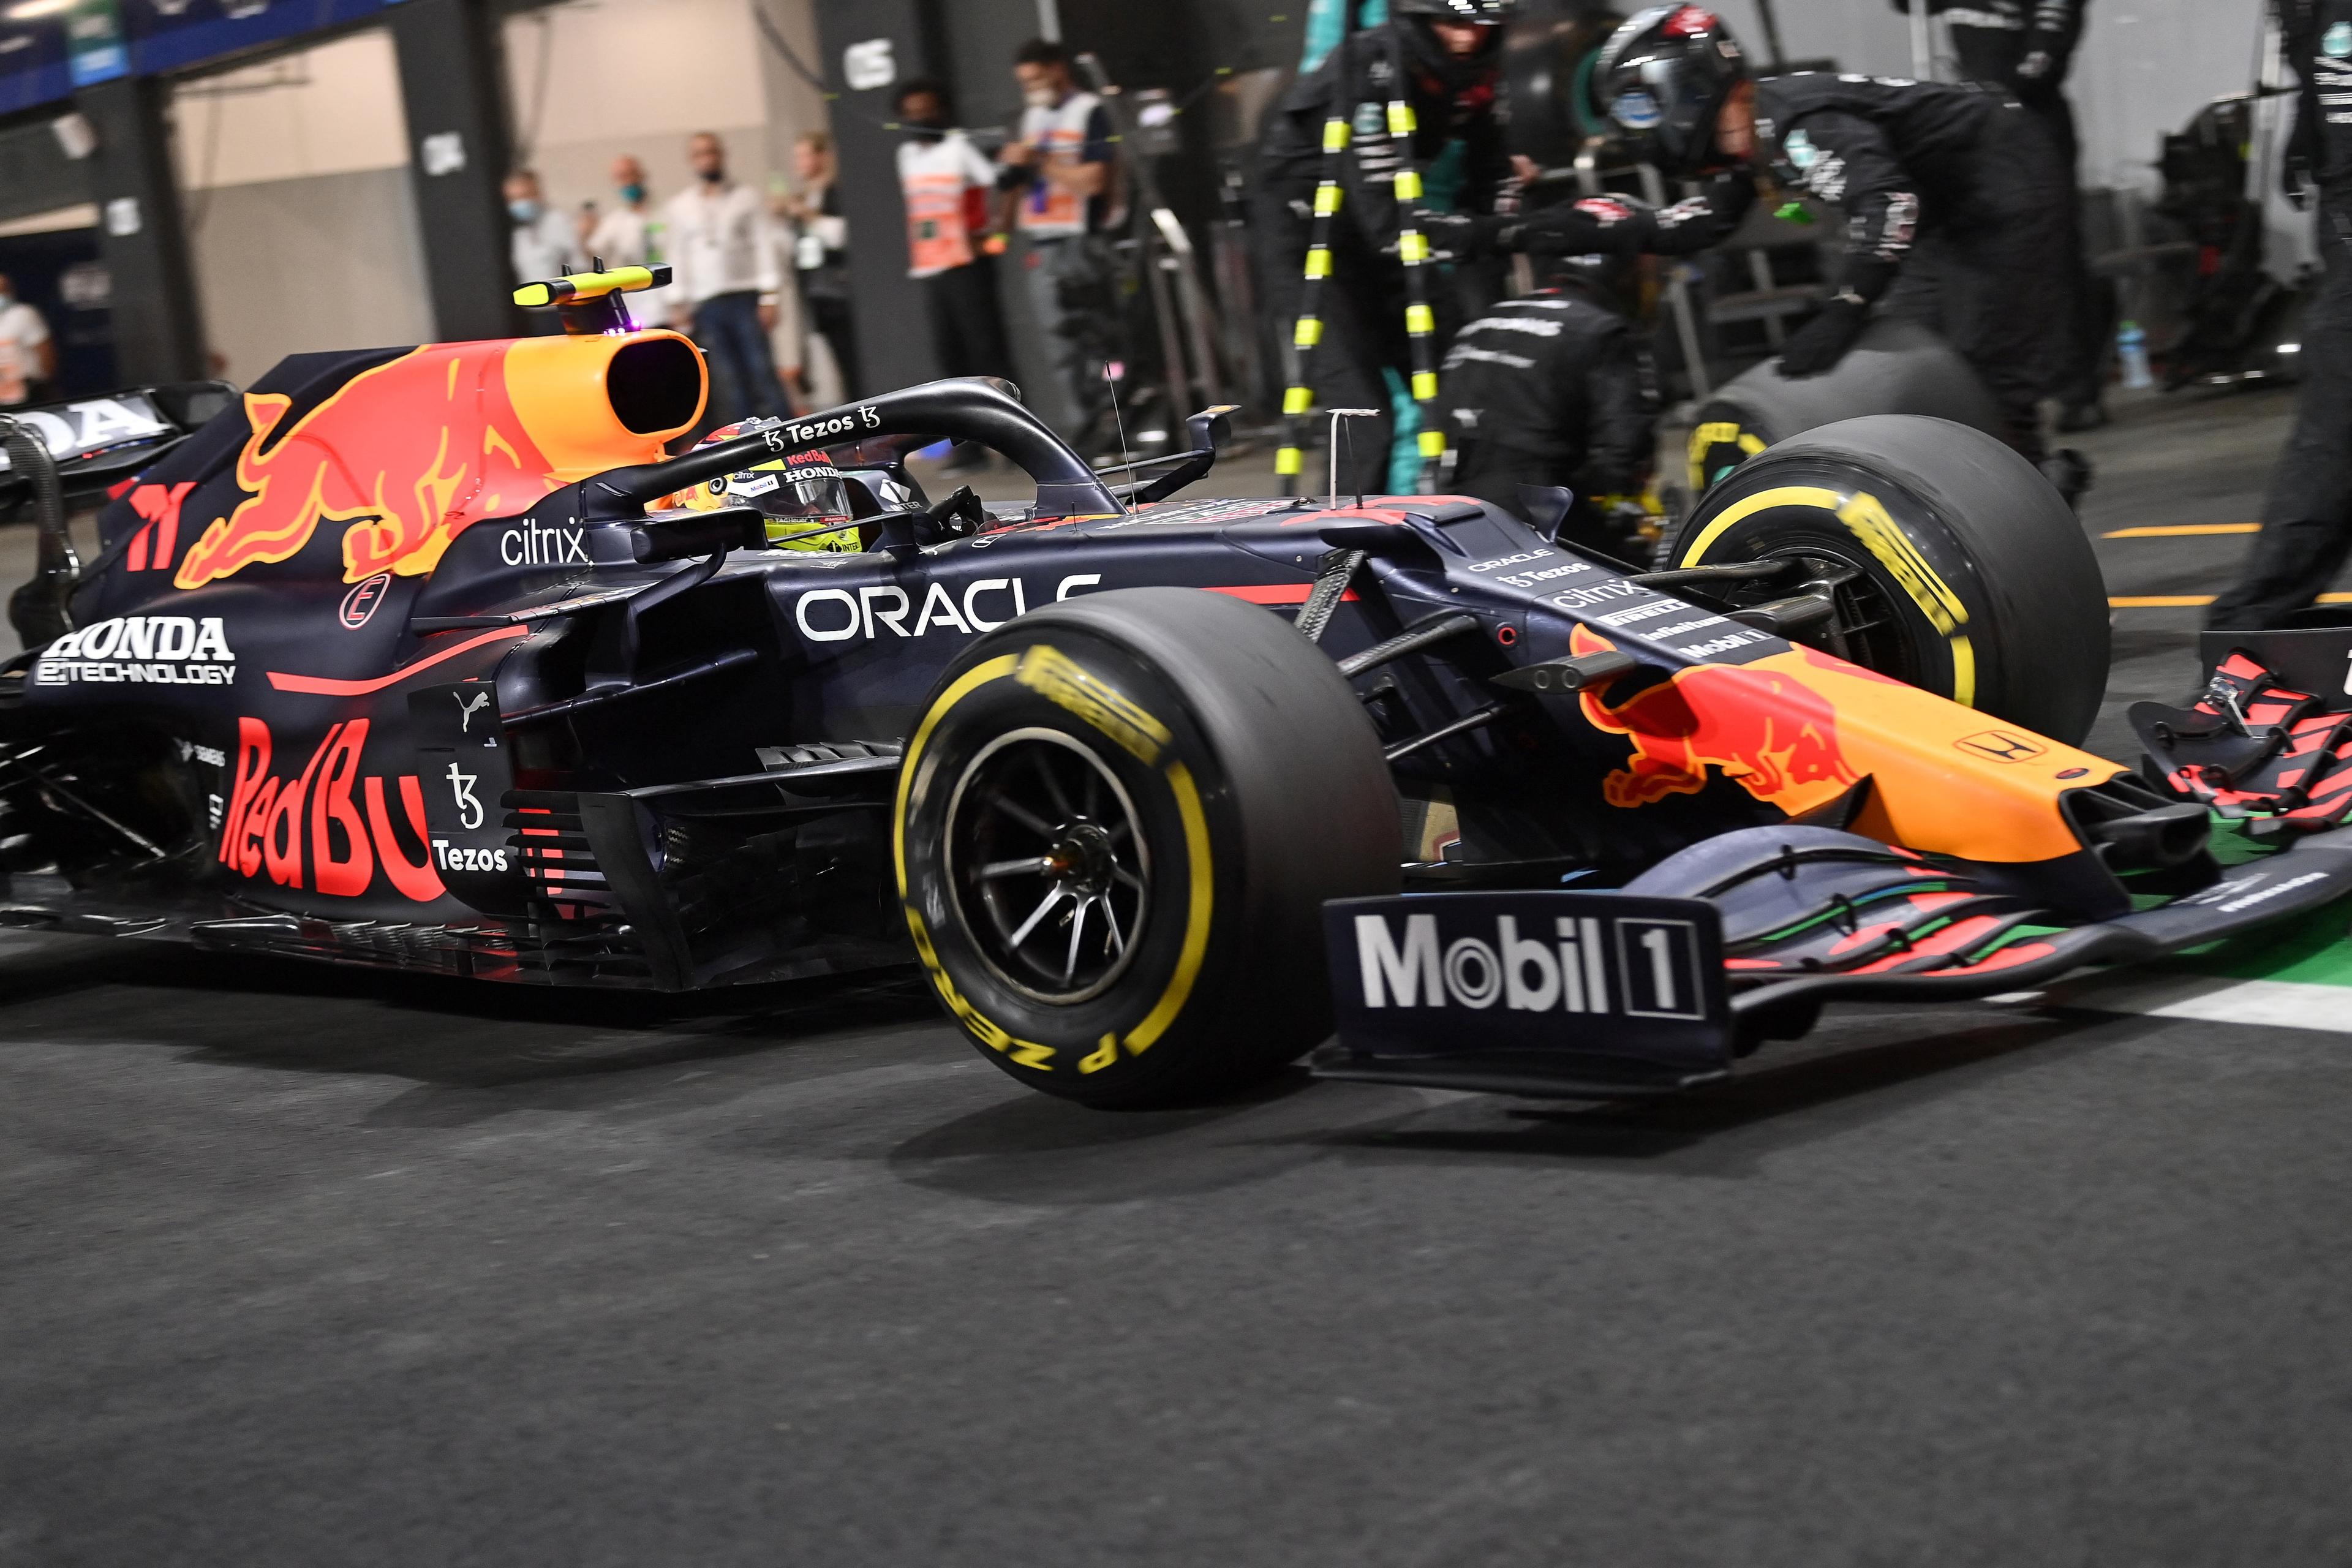 F1: Max Verstappen Is P1 In Abu Dhabi GP FP1